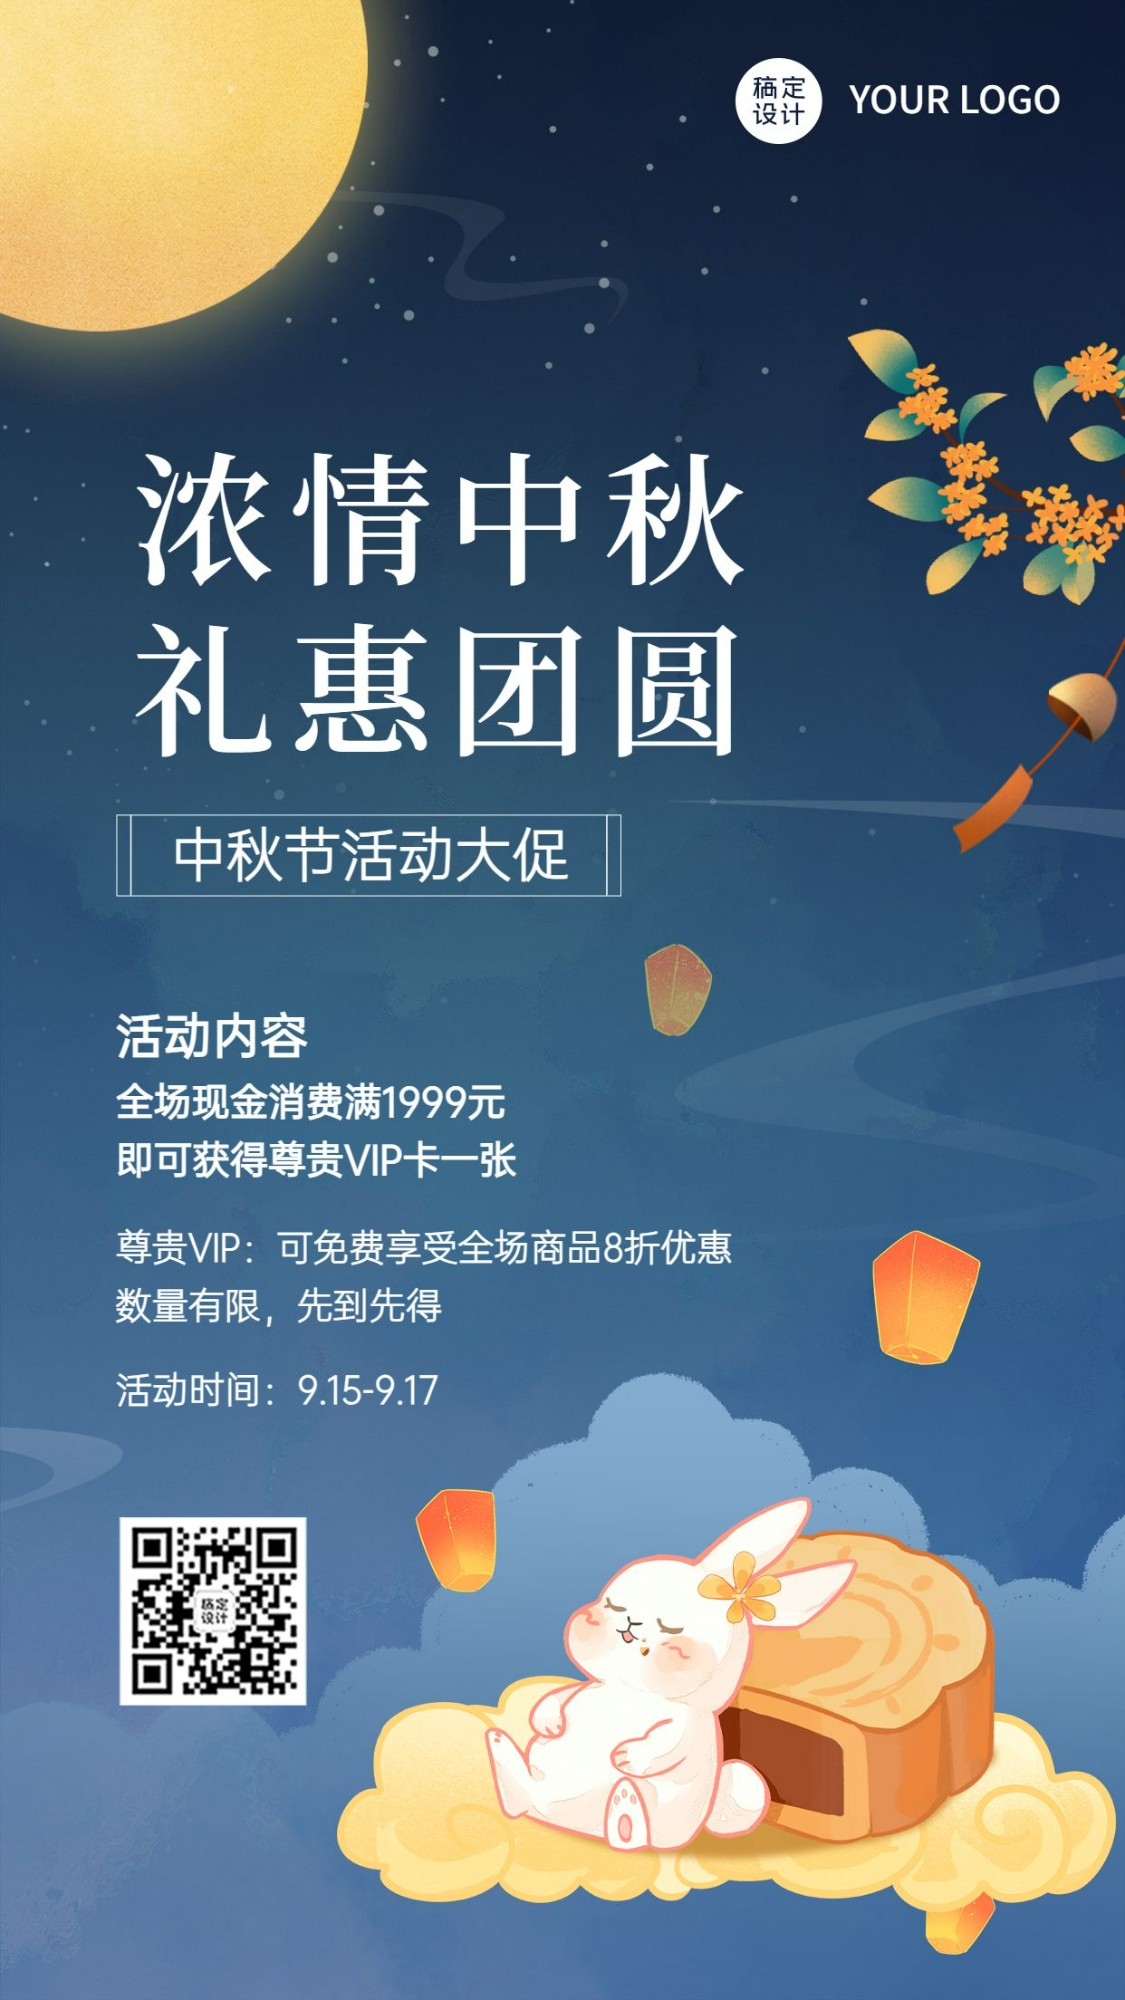 中秋节福利活动促销营销手机海报